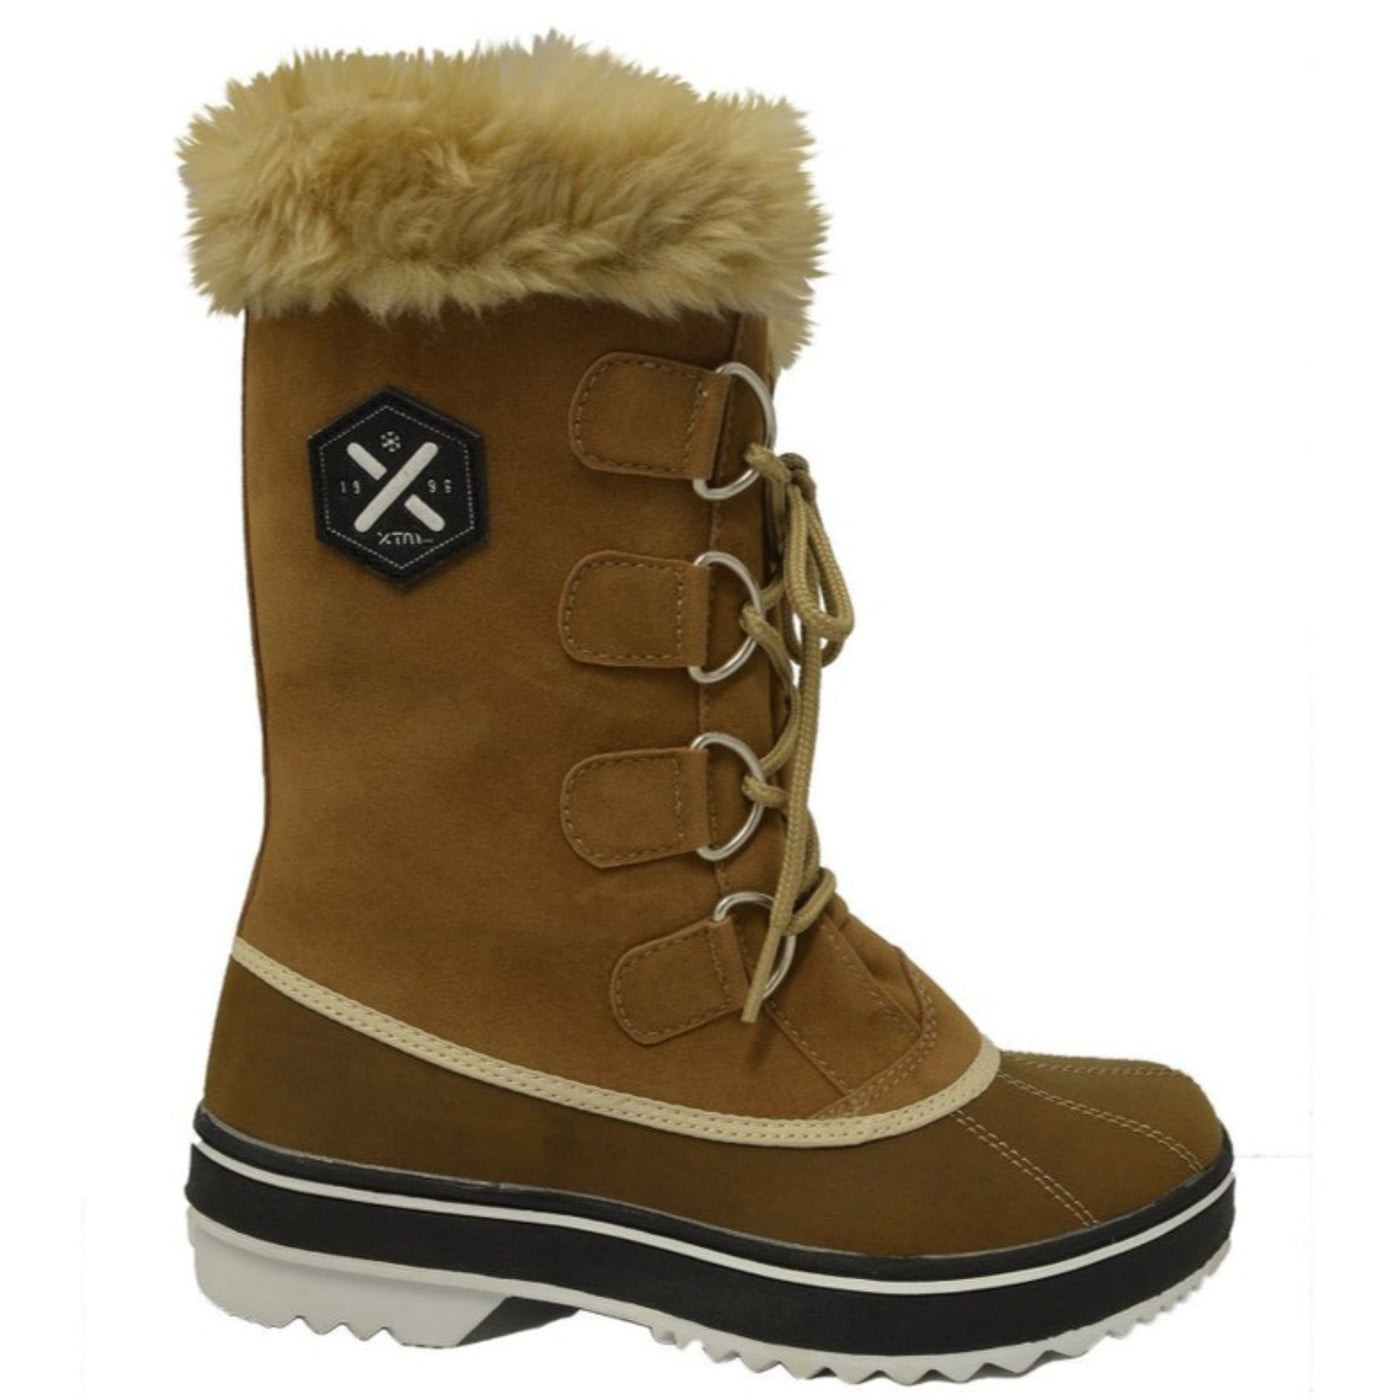 XTM Women's Juno Snow Boots - Brown